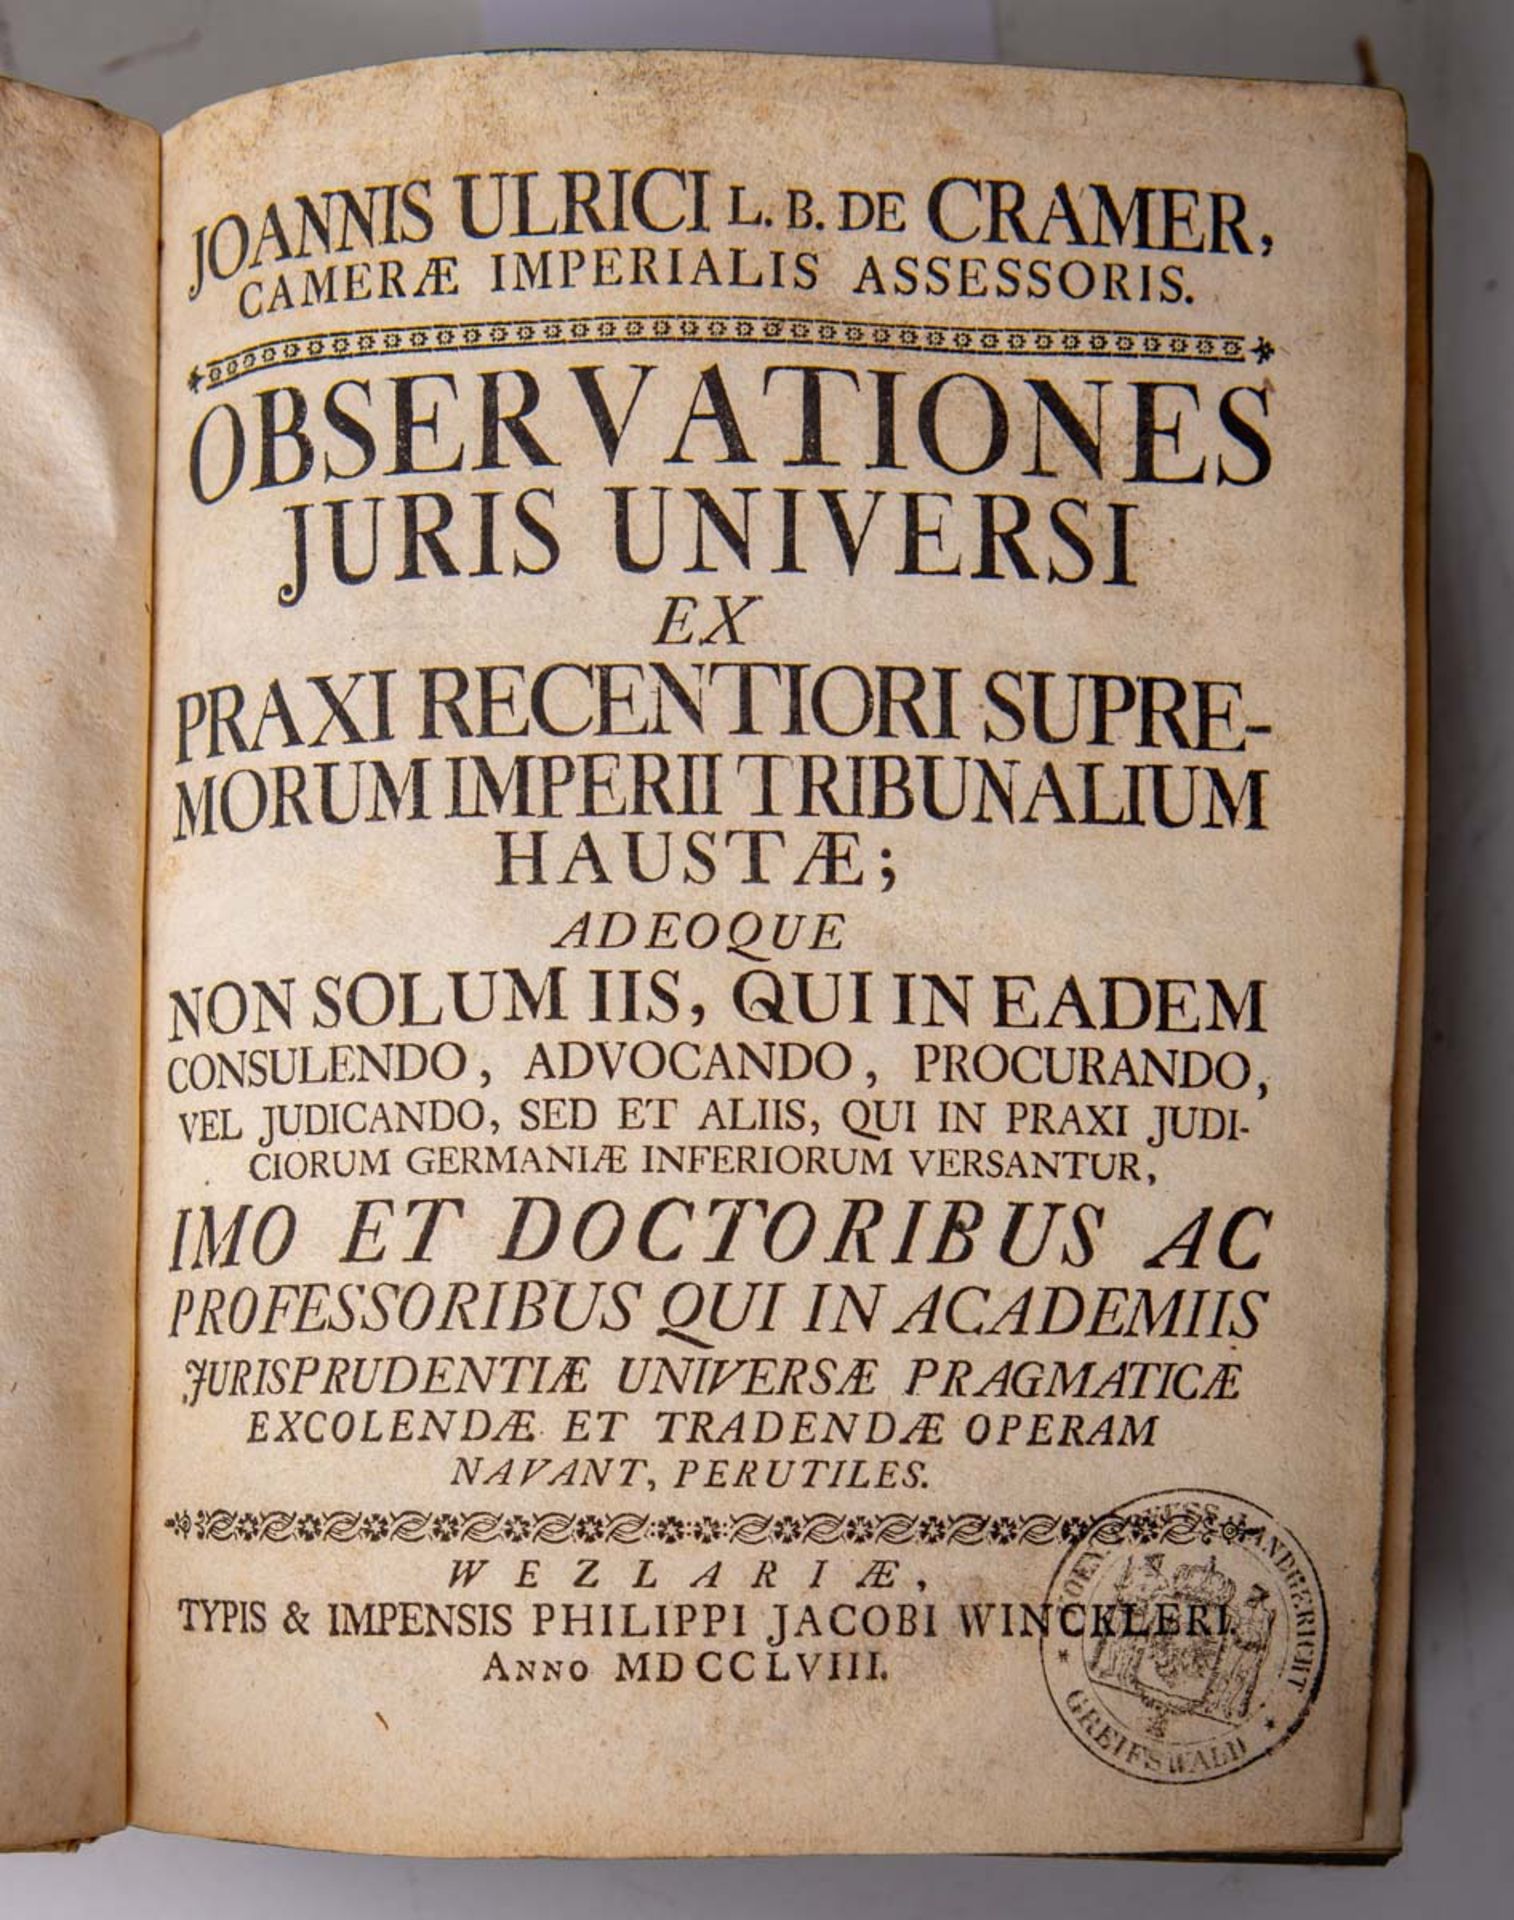 Cramer von, Johann Ulrich, "Joannis Ulrici L. B. De Cramer, Camerae Imperialis Assessoris. Observati